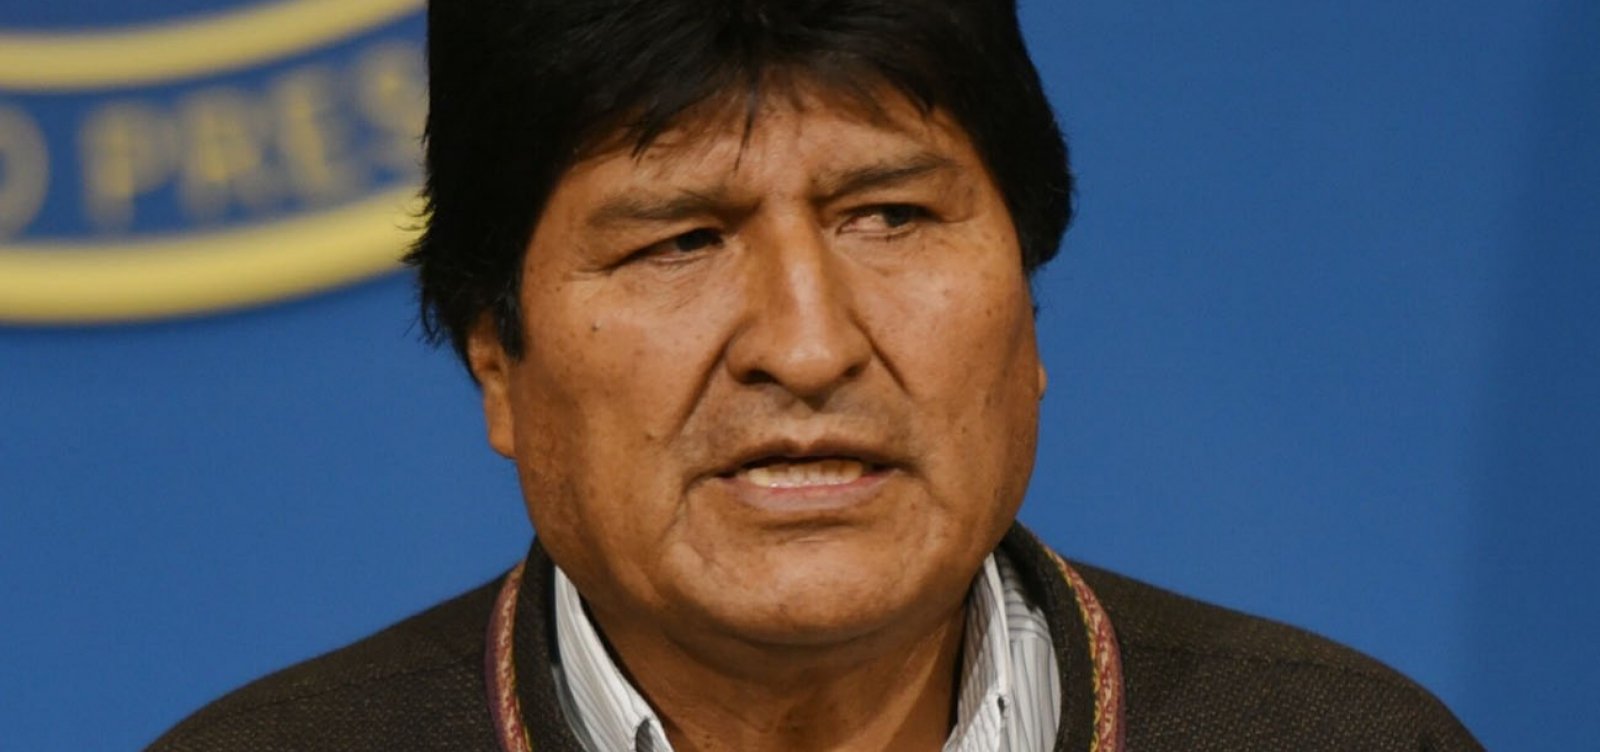 Evo Morales chega à Argentina; ex-presidente boliviano terá status de refugiado